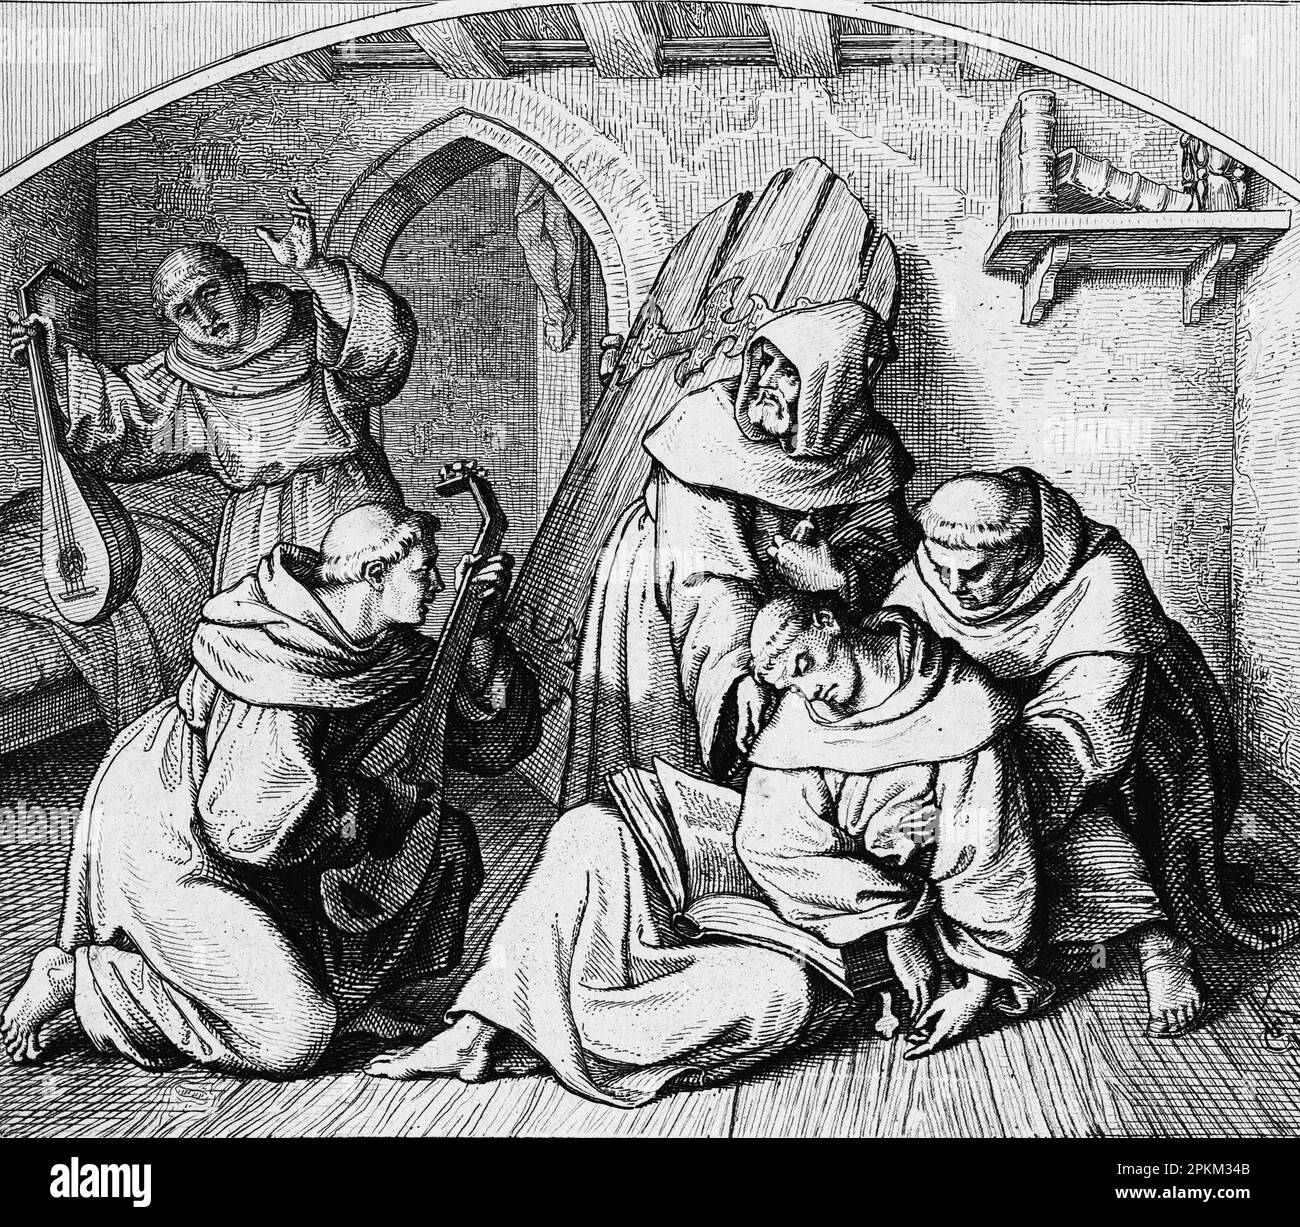 Luther couché dans la cellule de son monastère est inconcieusement remis en vie par la musique de luth, illustration historique 1851 Banque D'Images